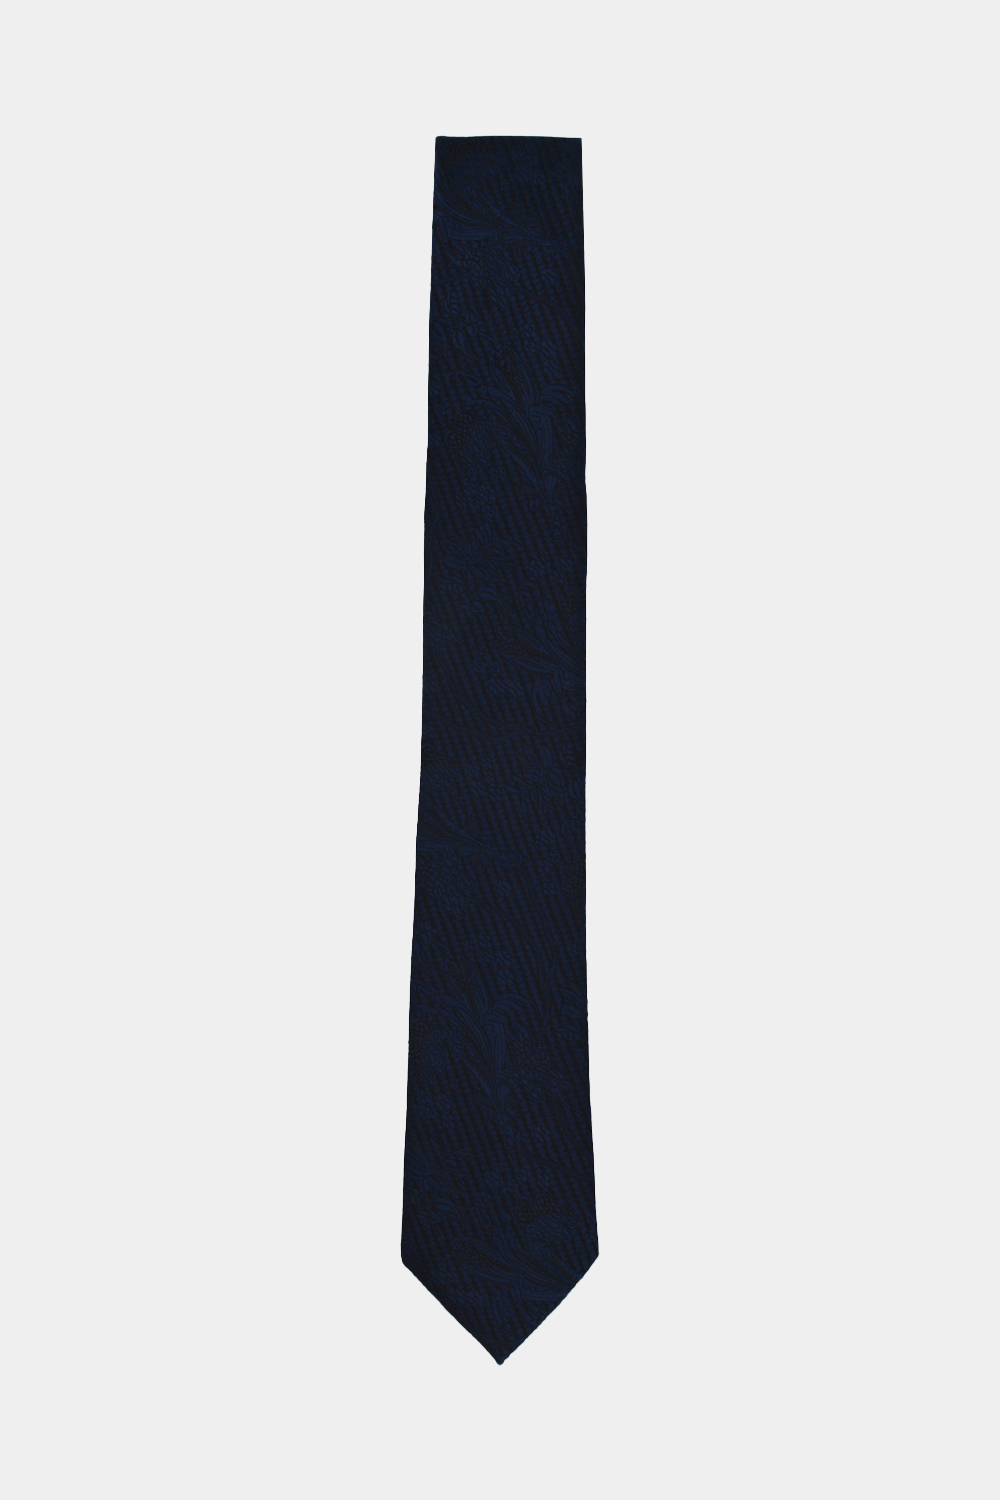 Jacquard Tie 6 cm Dark Blue - TIE HOUSE